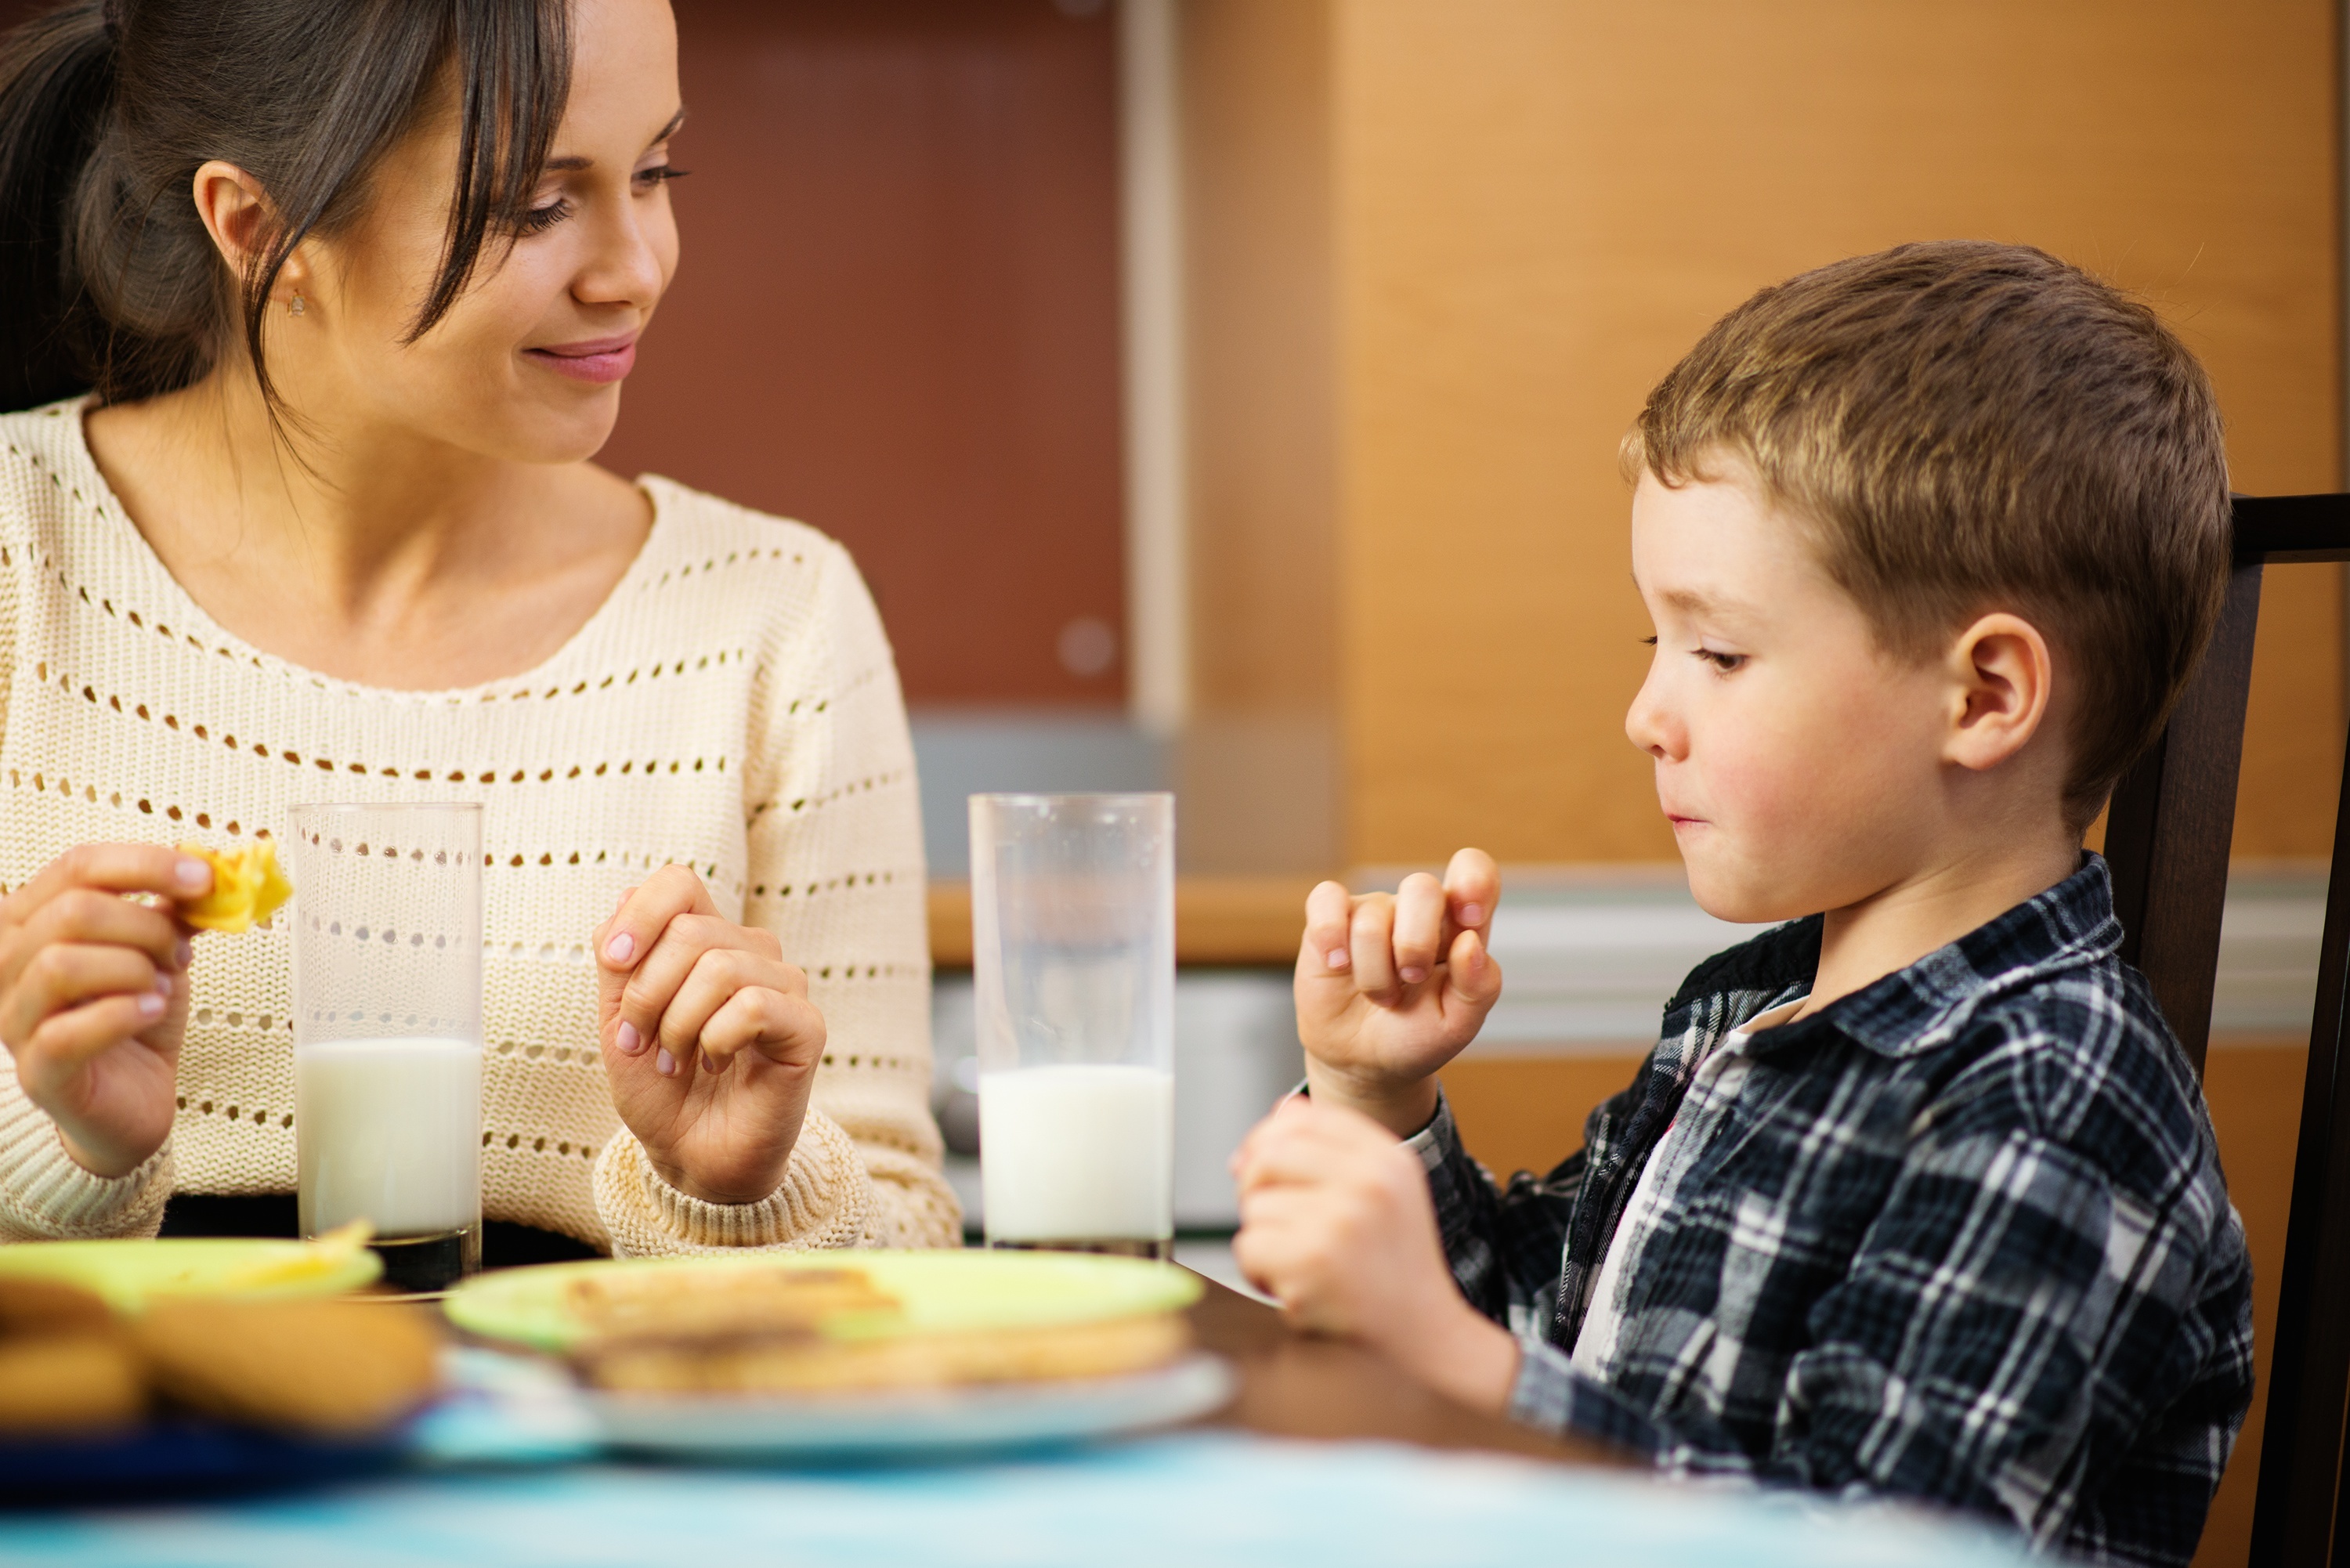 Junge glückliche Mutter und ihr Kind beim Essen. | Quelle: Shutterstock